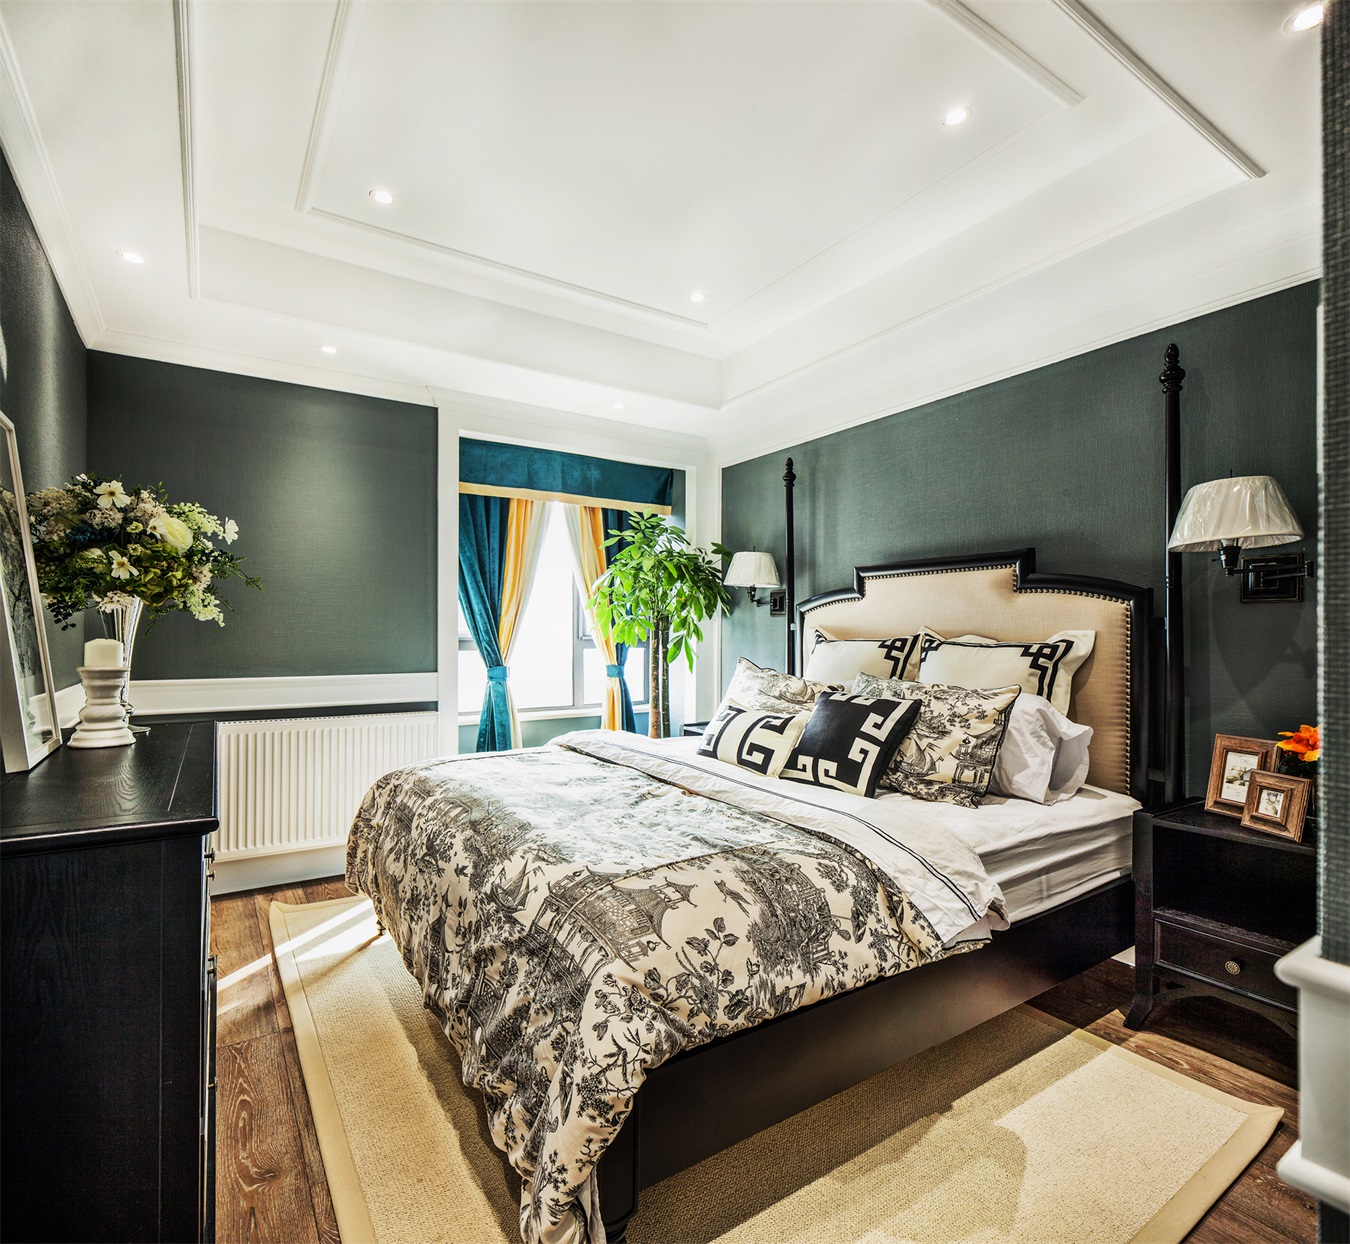 背景墙深绿色与白色分层设计质感十足，欧式床型增添华丽视感，使空间更加复古。